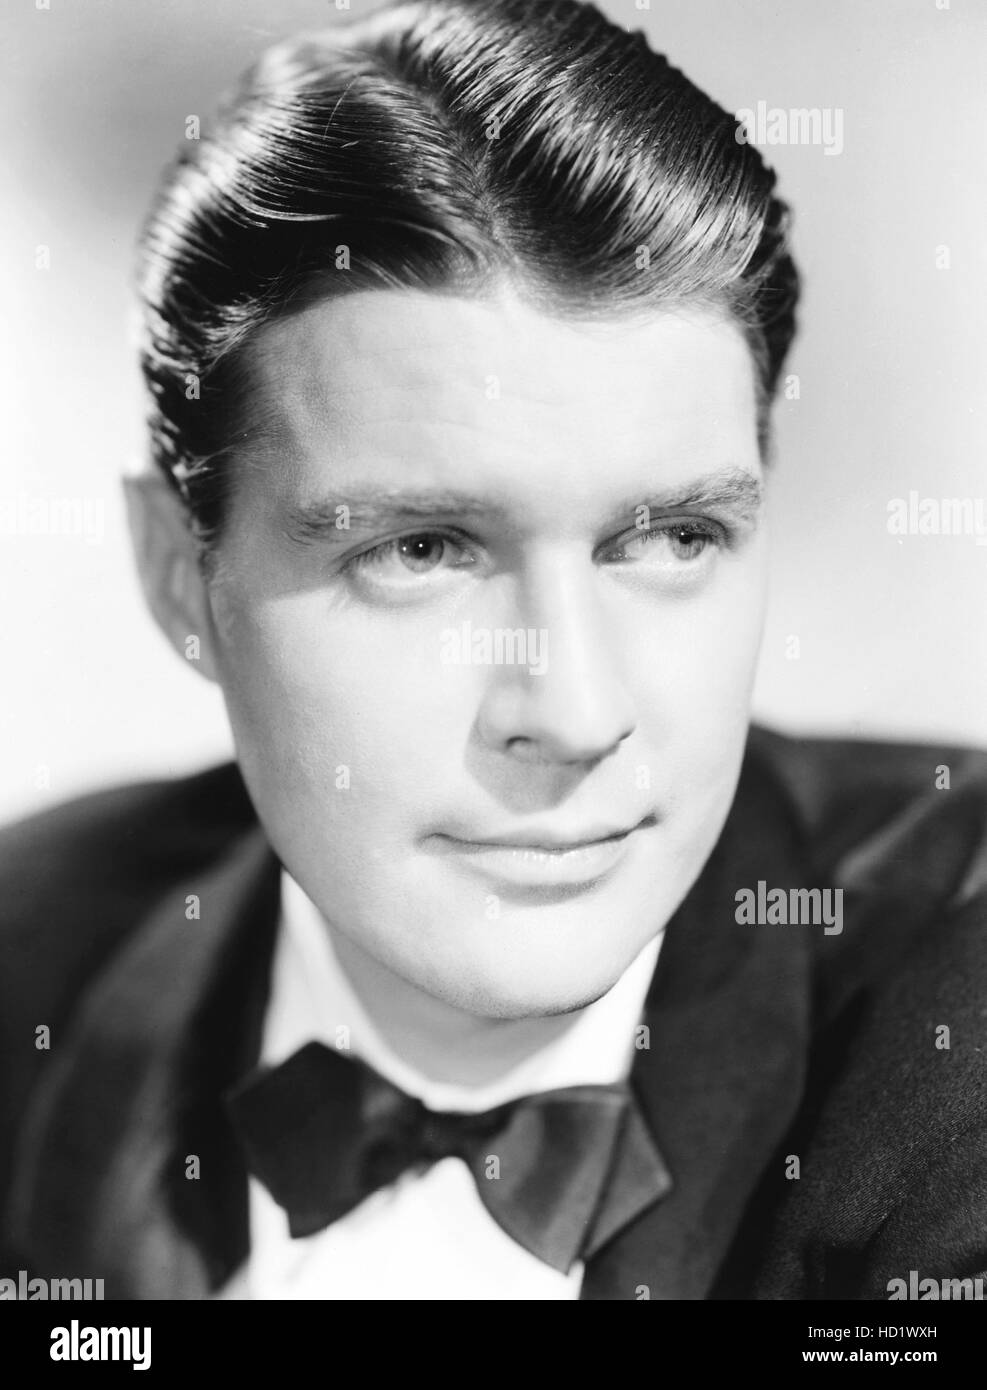 Robert Kent, 1930s Stock Photo - Alamy